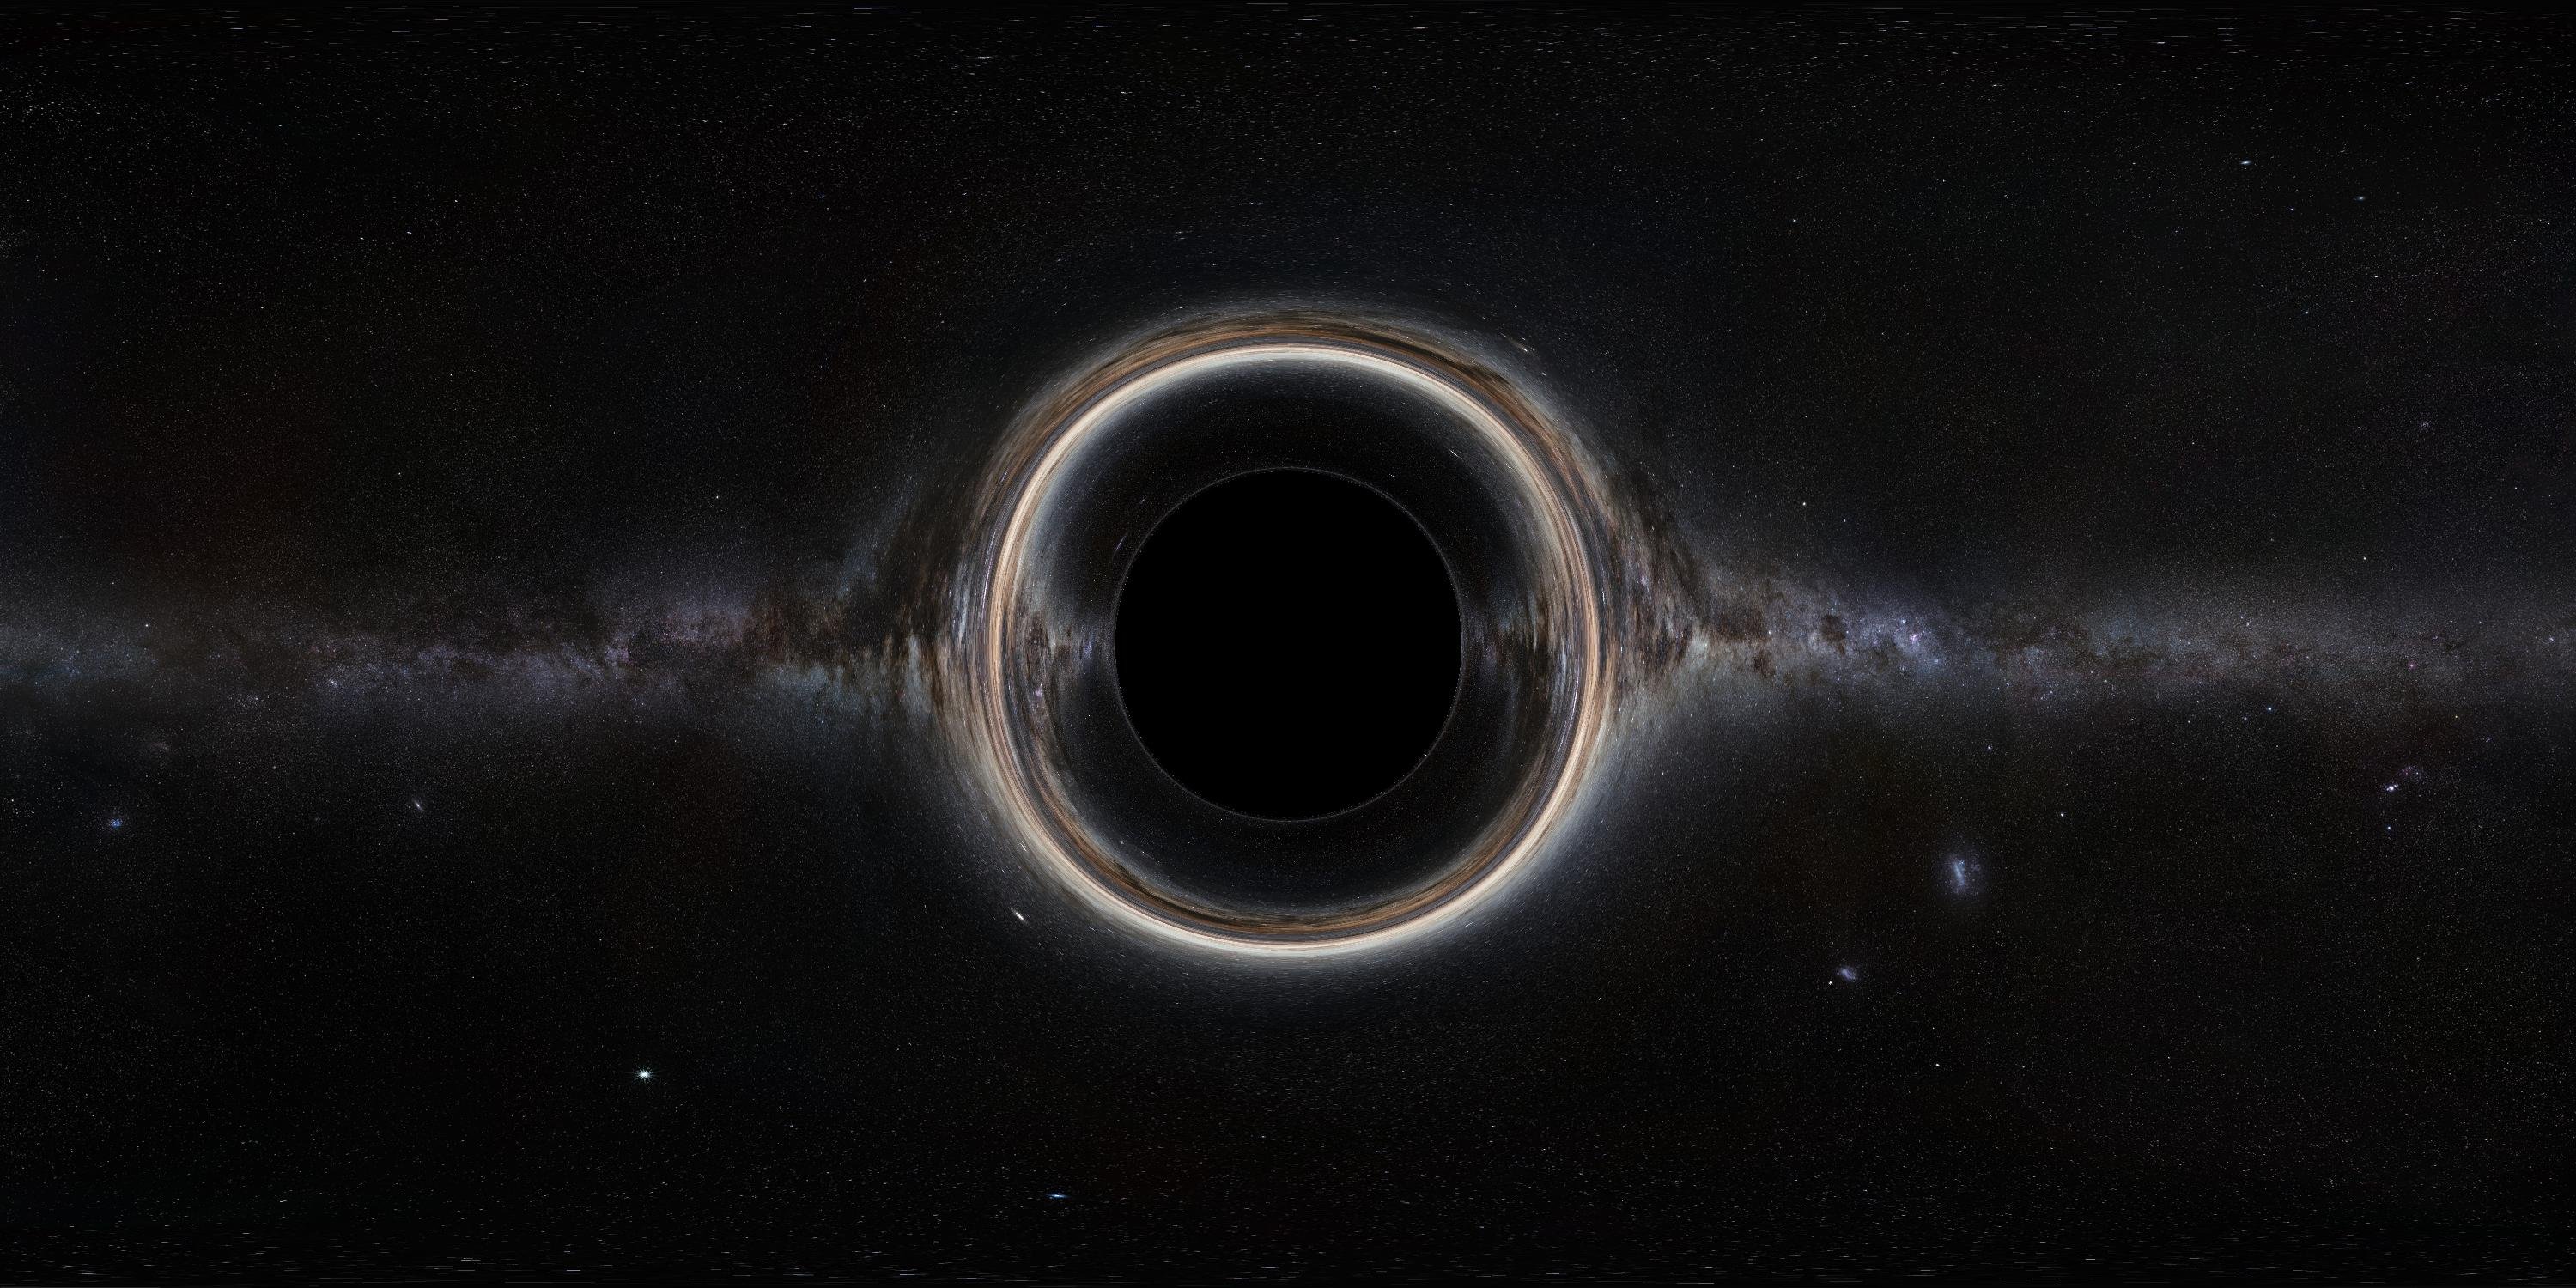 HR 6819 черная дыра